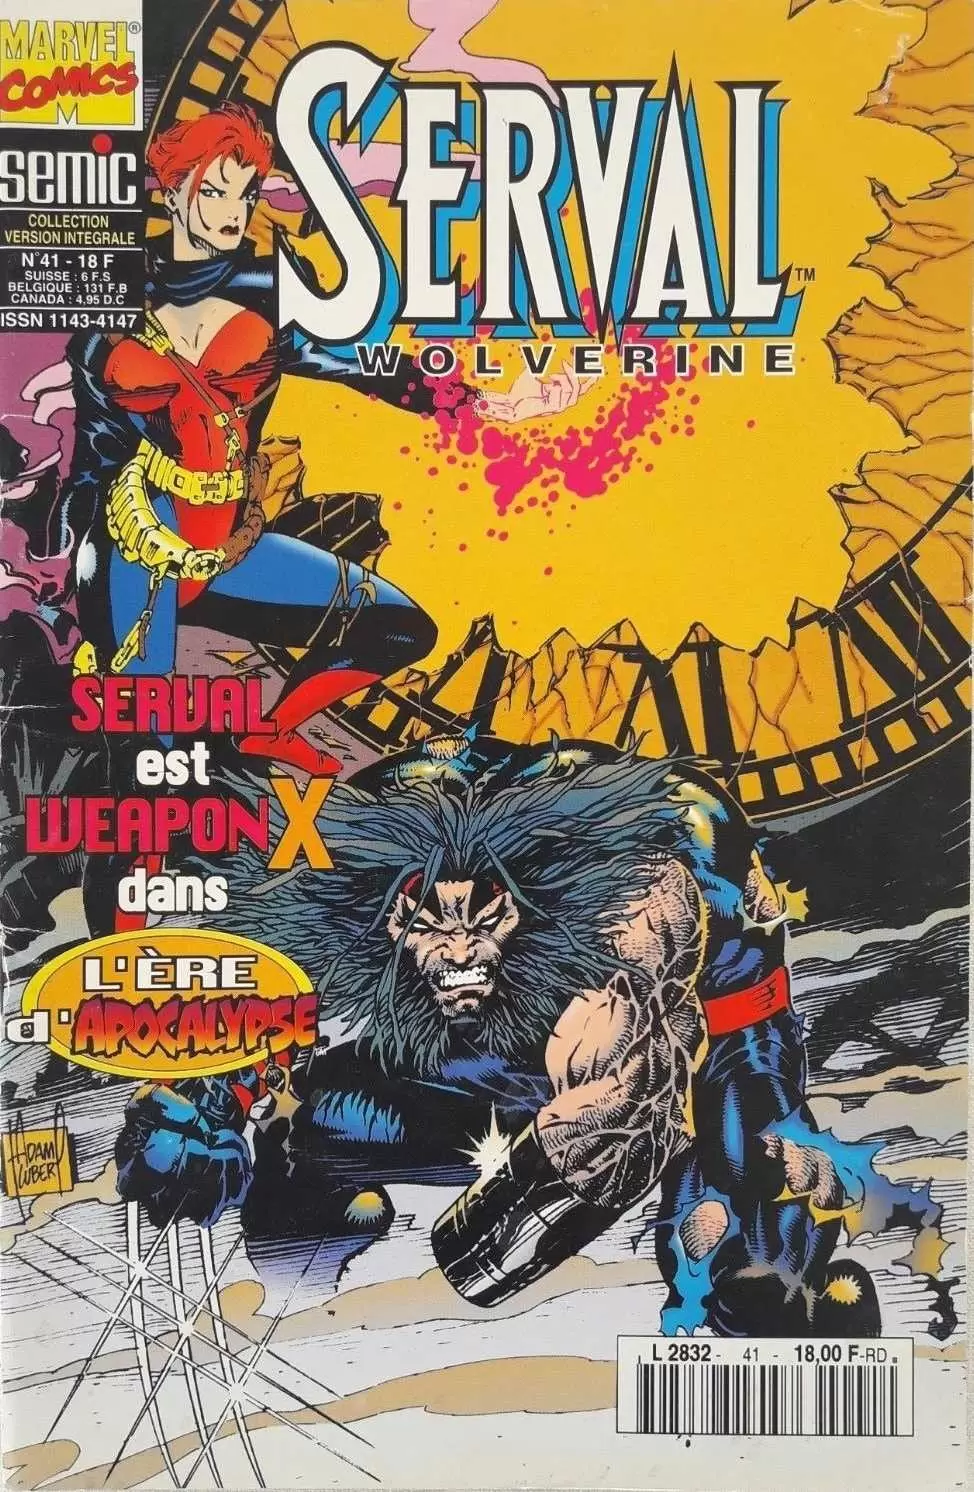 Serval Wolverine - Weapon X : Vieilles blessures - Les feux du ciel